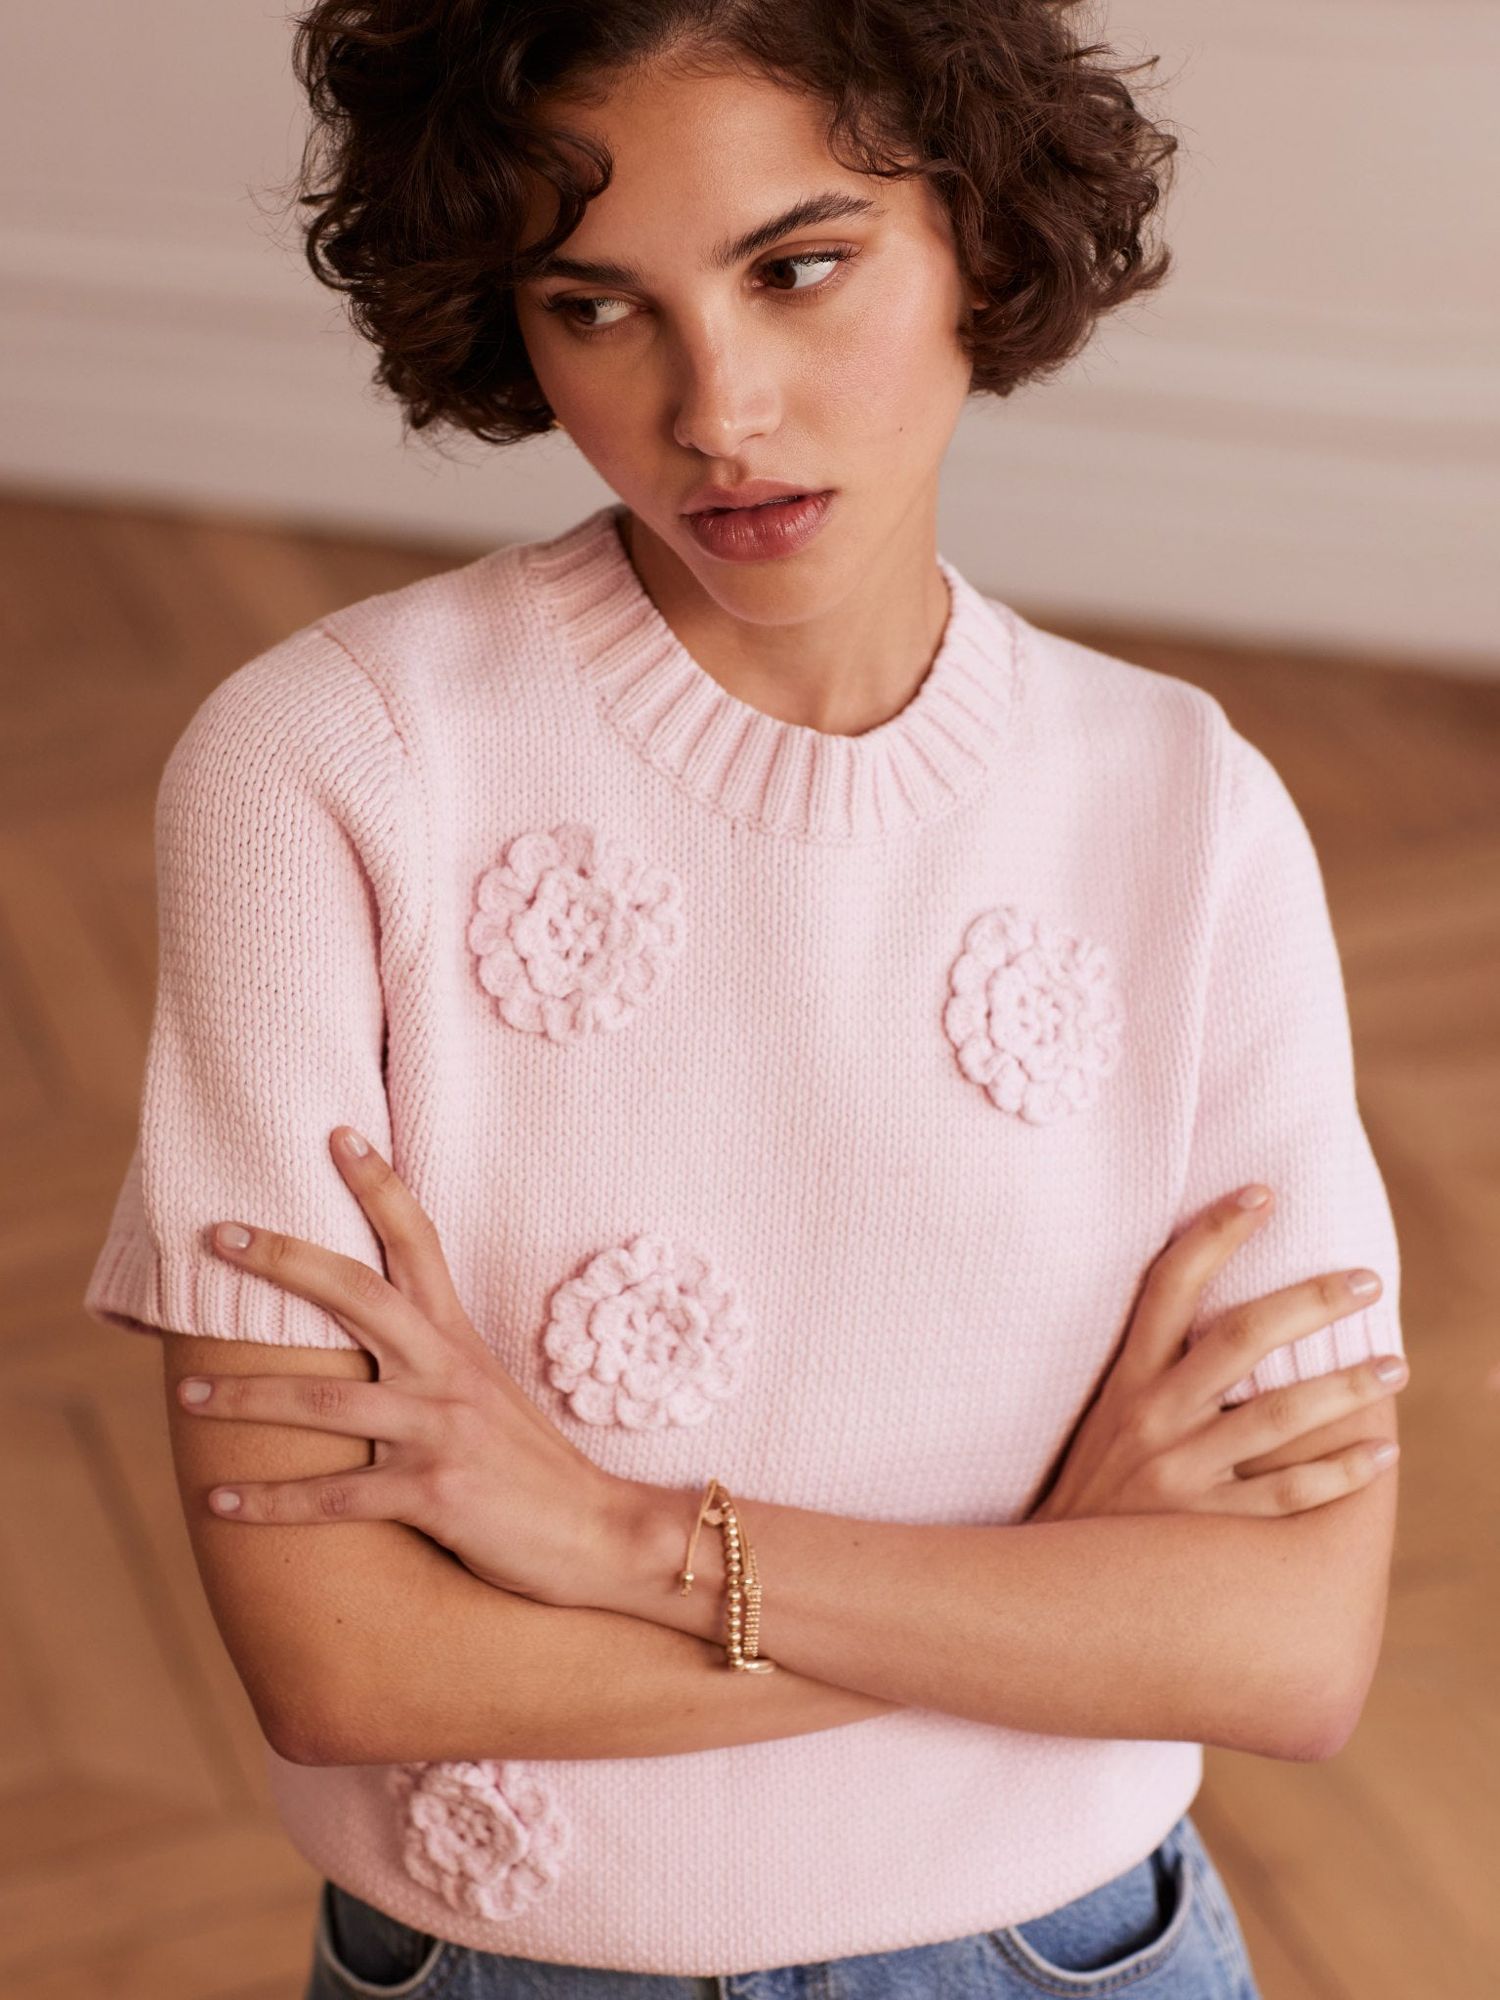 Buy Mint Velvet Flower Applique Knit T-Shirt, Pink Online at johnlewis.com